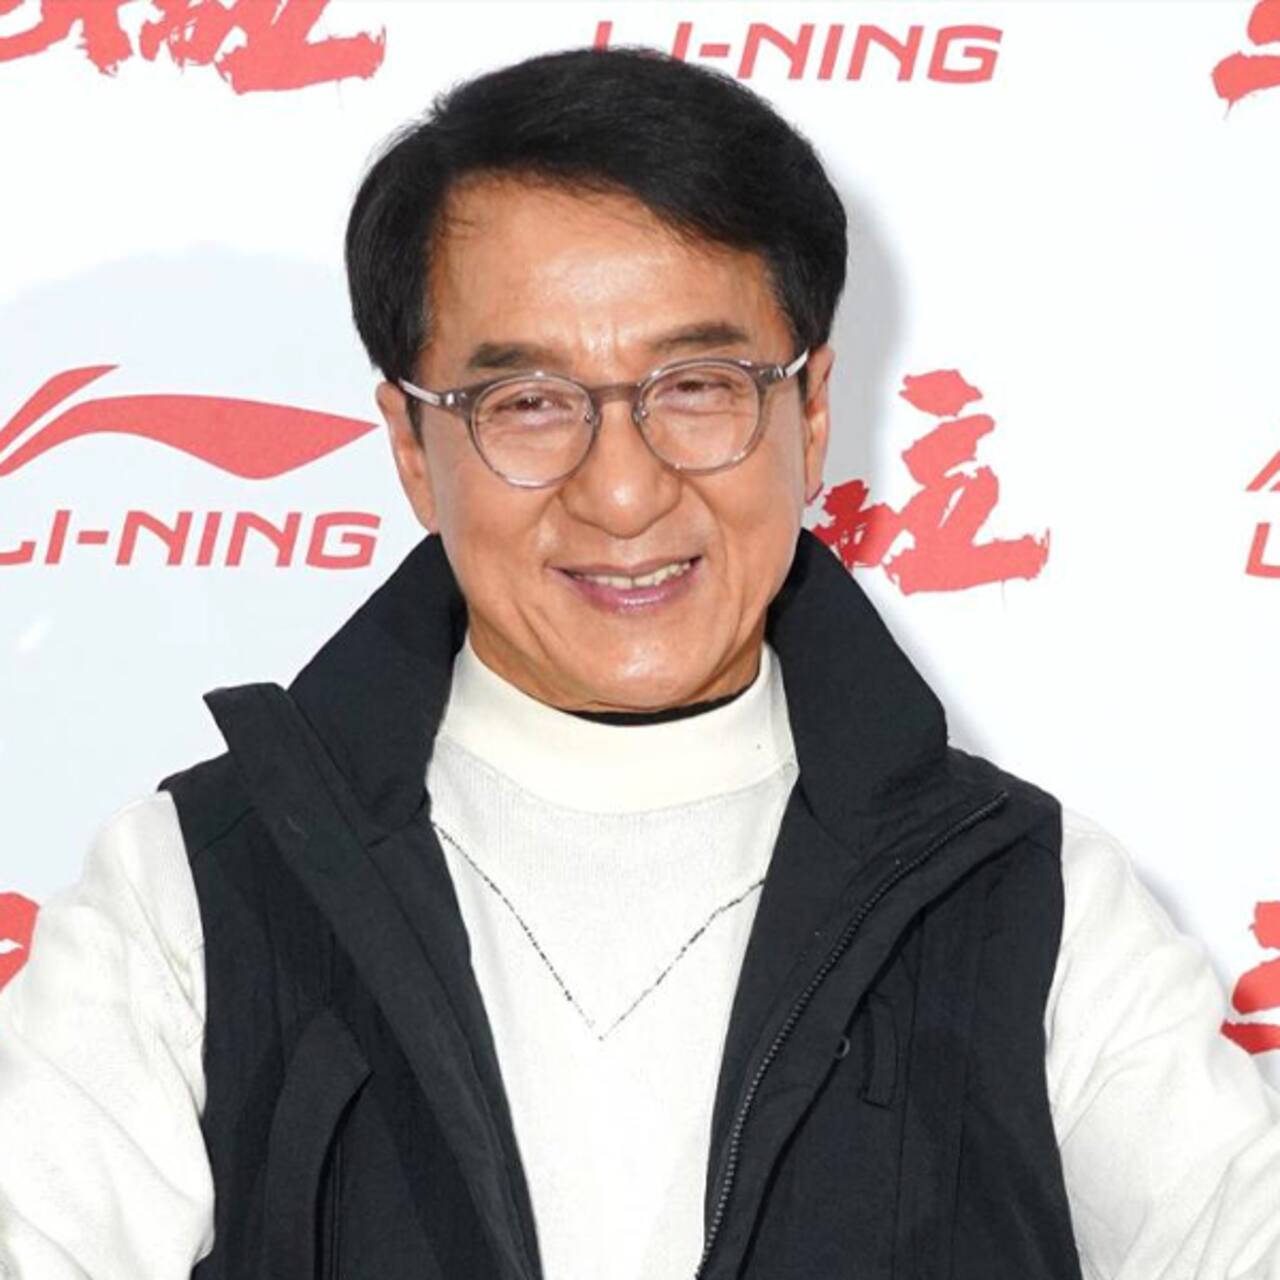 जैकी चैन (Jackie Chan)